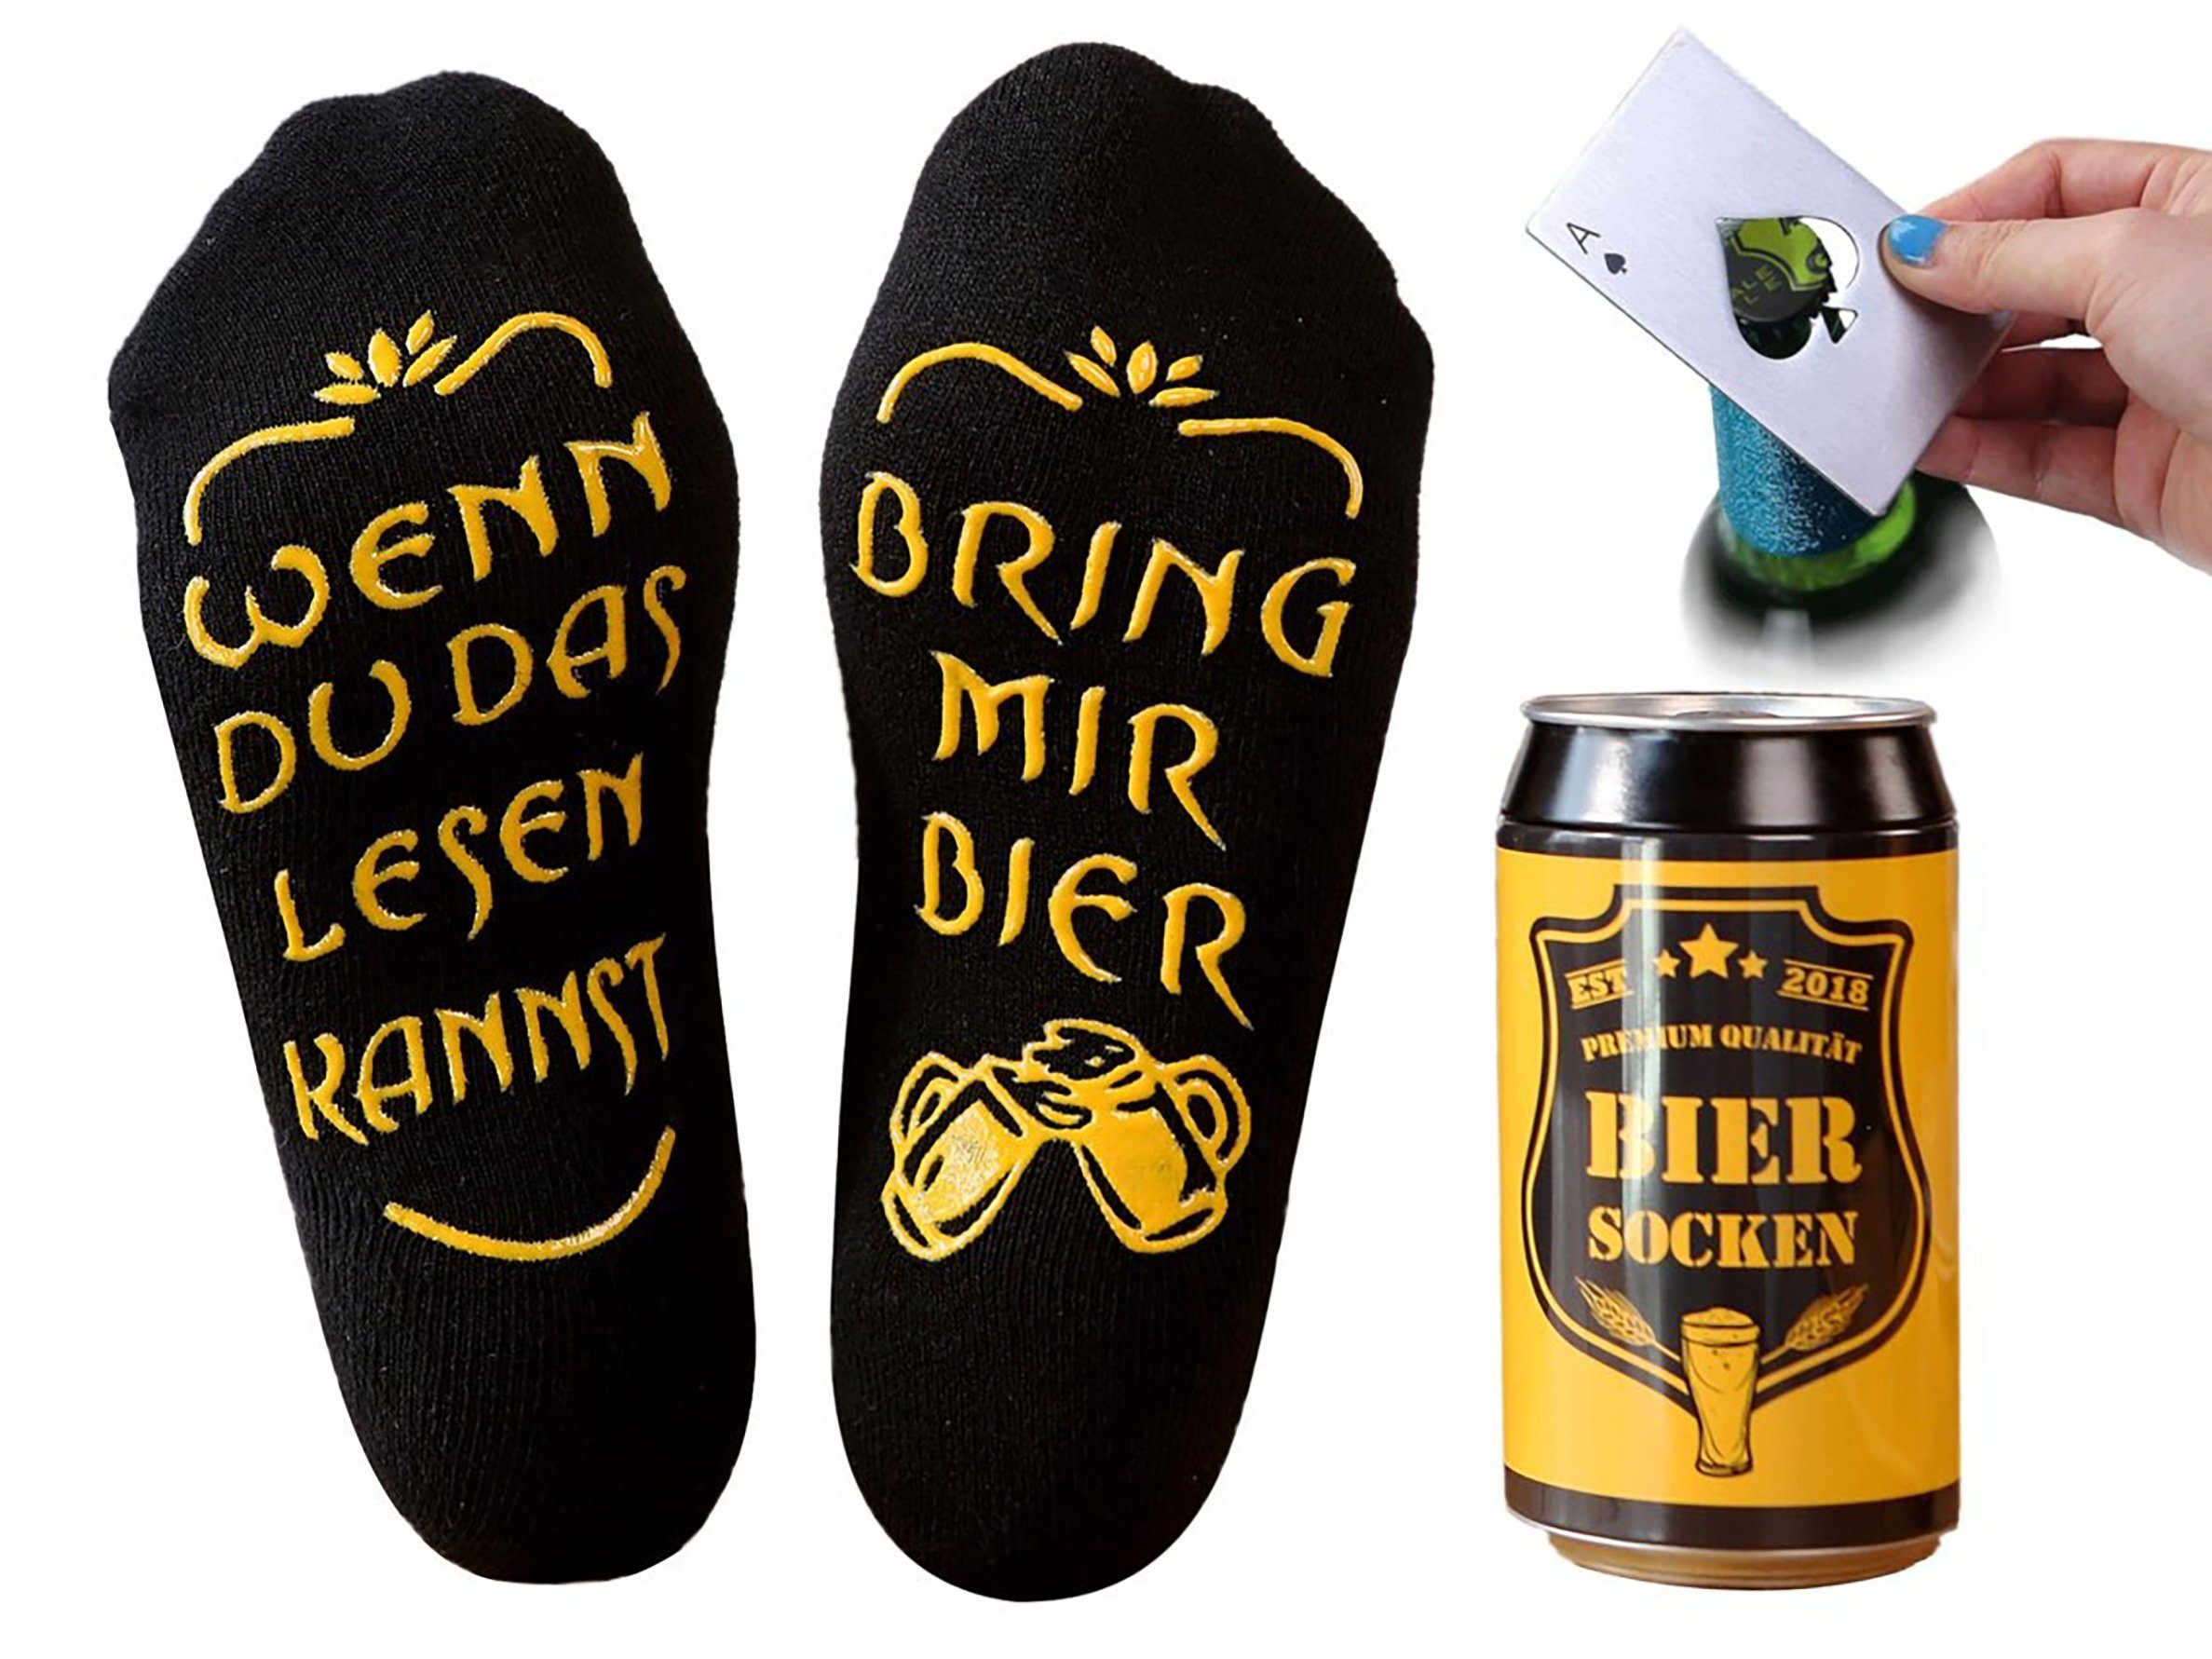 Lucadeau Socken Bier Socken mit Spruch und Edelstahl Flaschenöffner, bring mir Bier (Dose, 1 Paar) rutschfest, Gr. 38-44, Geschenke für Männer, Geburtstagsgeschenk Schwarz+Pikass silber